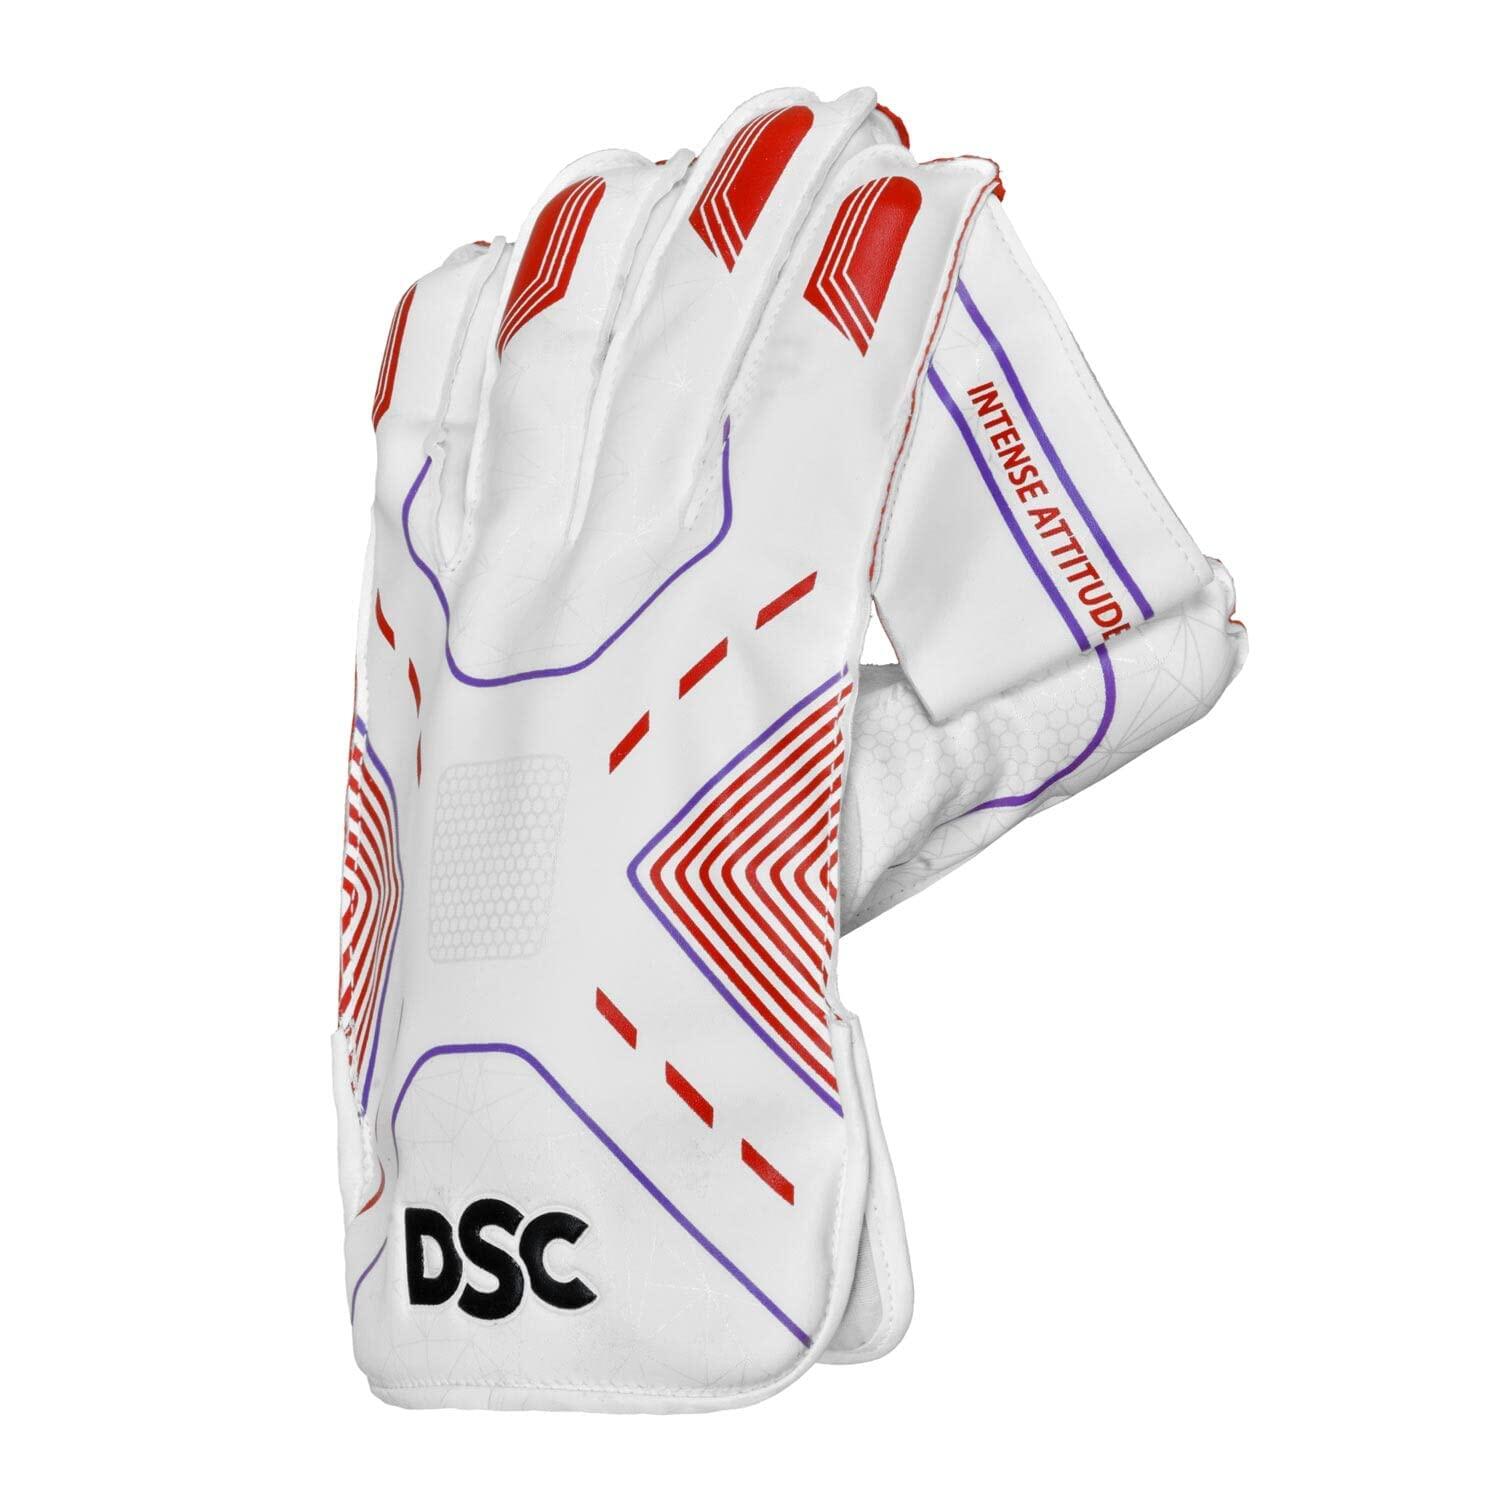 DSC DSC Intense Attitude Wicket keeping Gloves